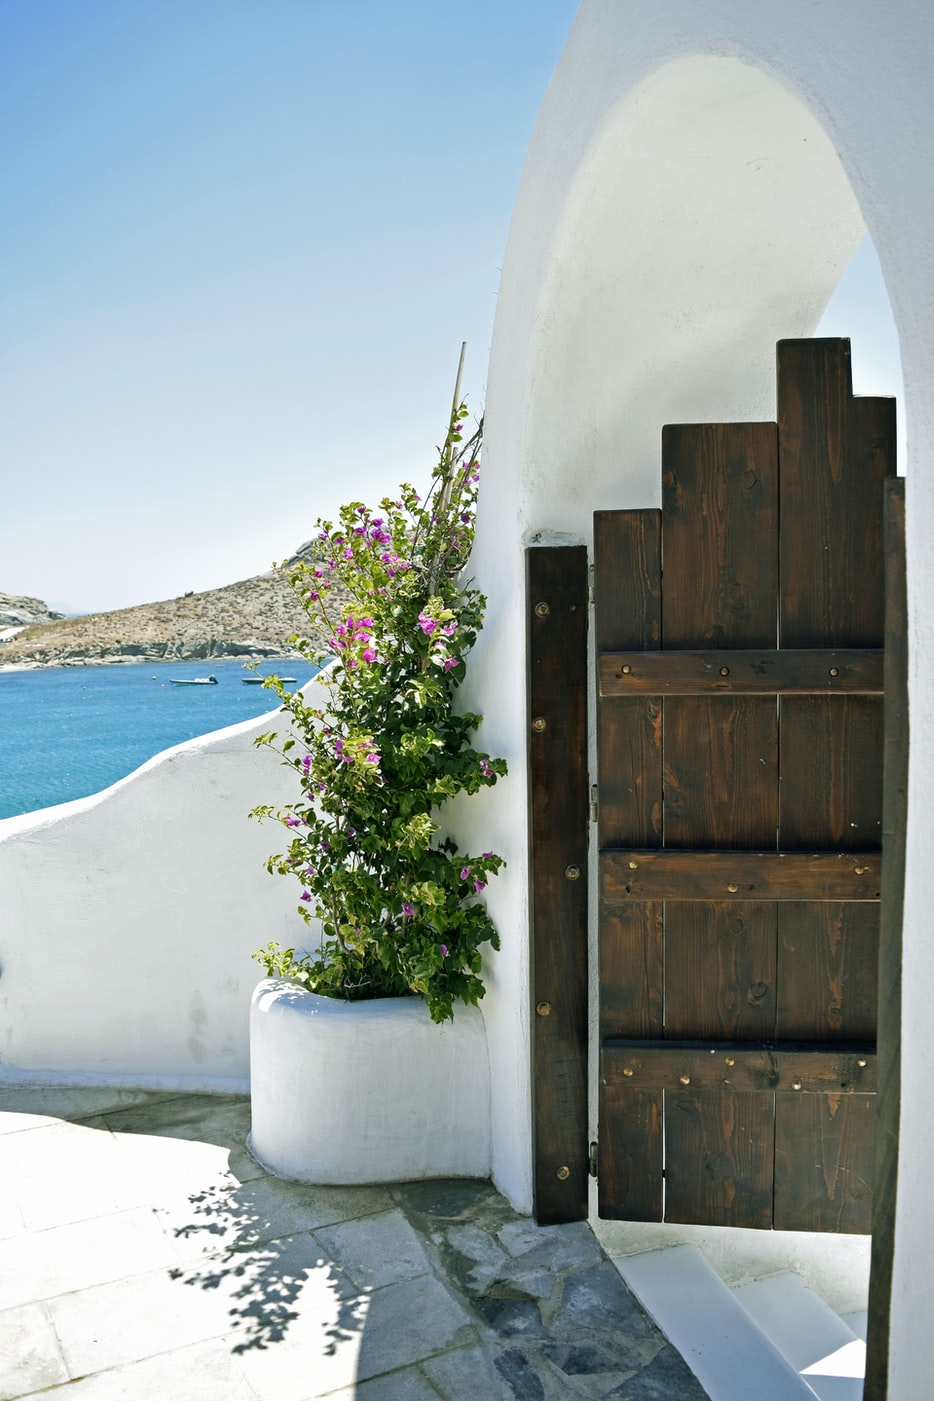 أجمل جزر اليونان